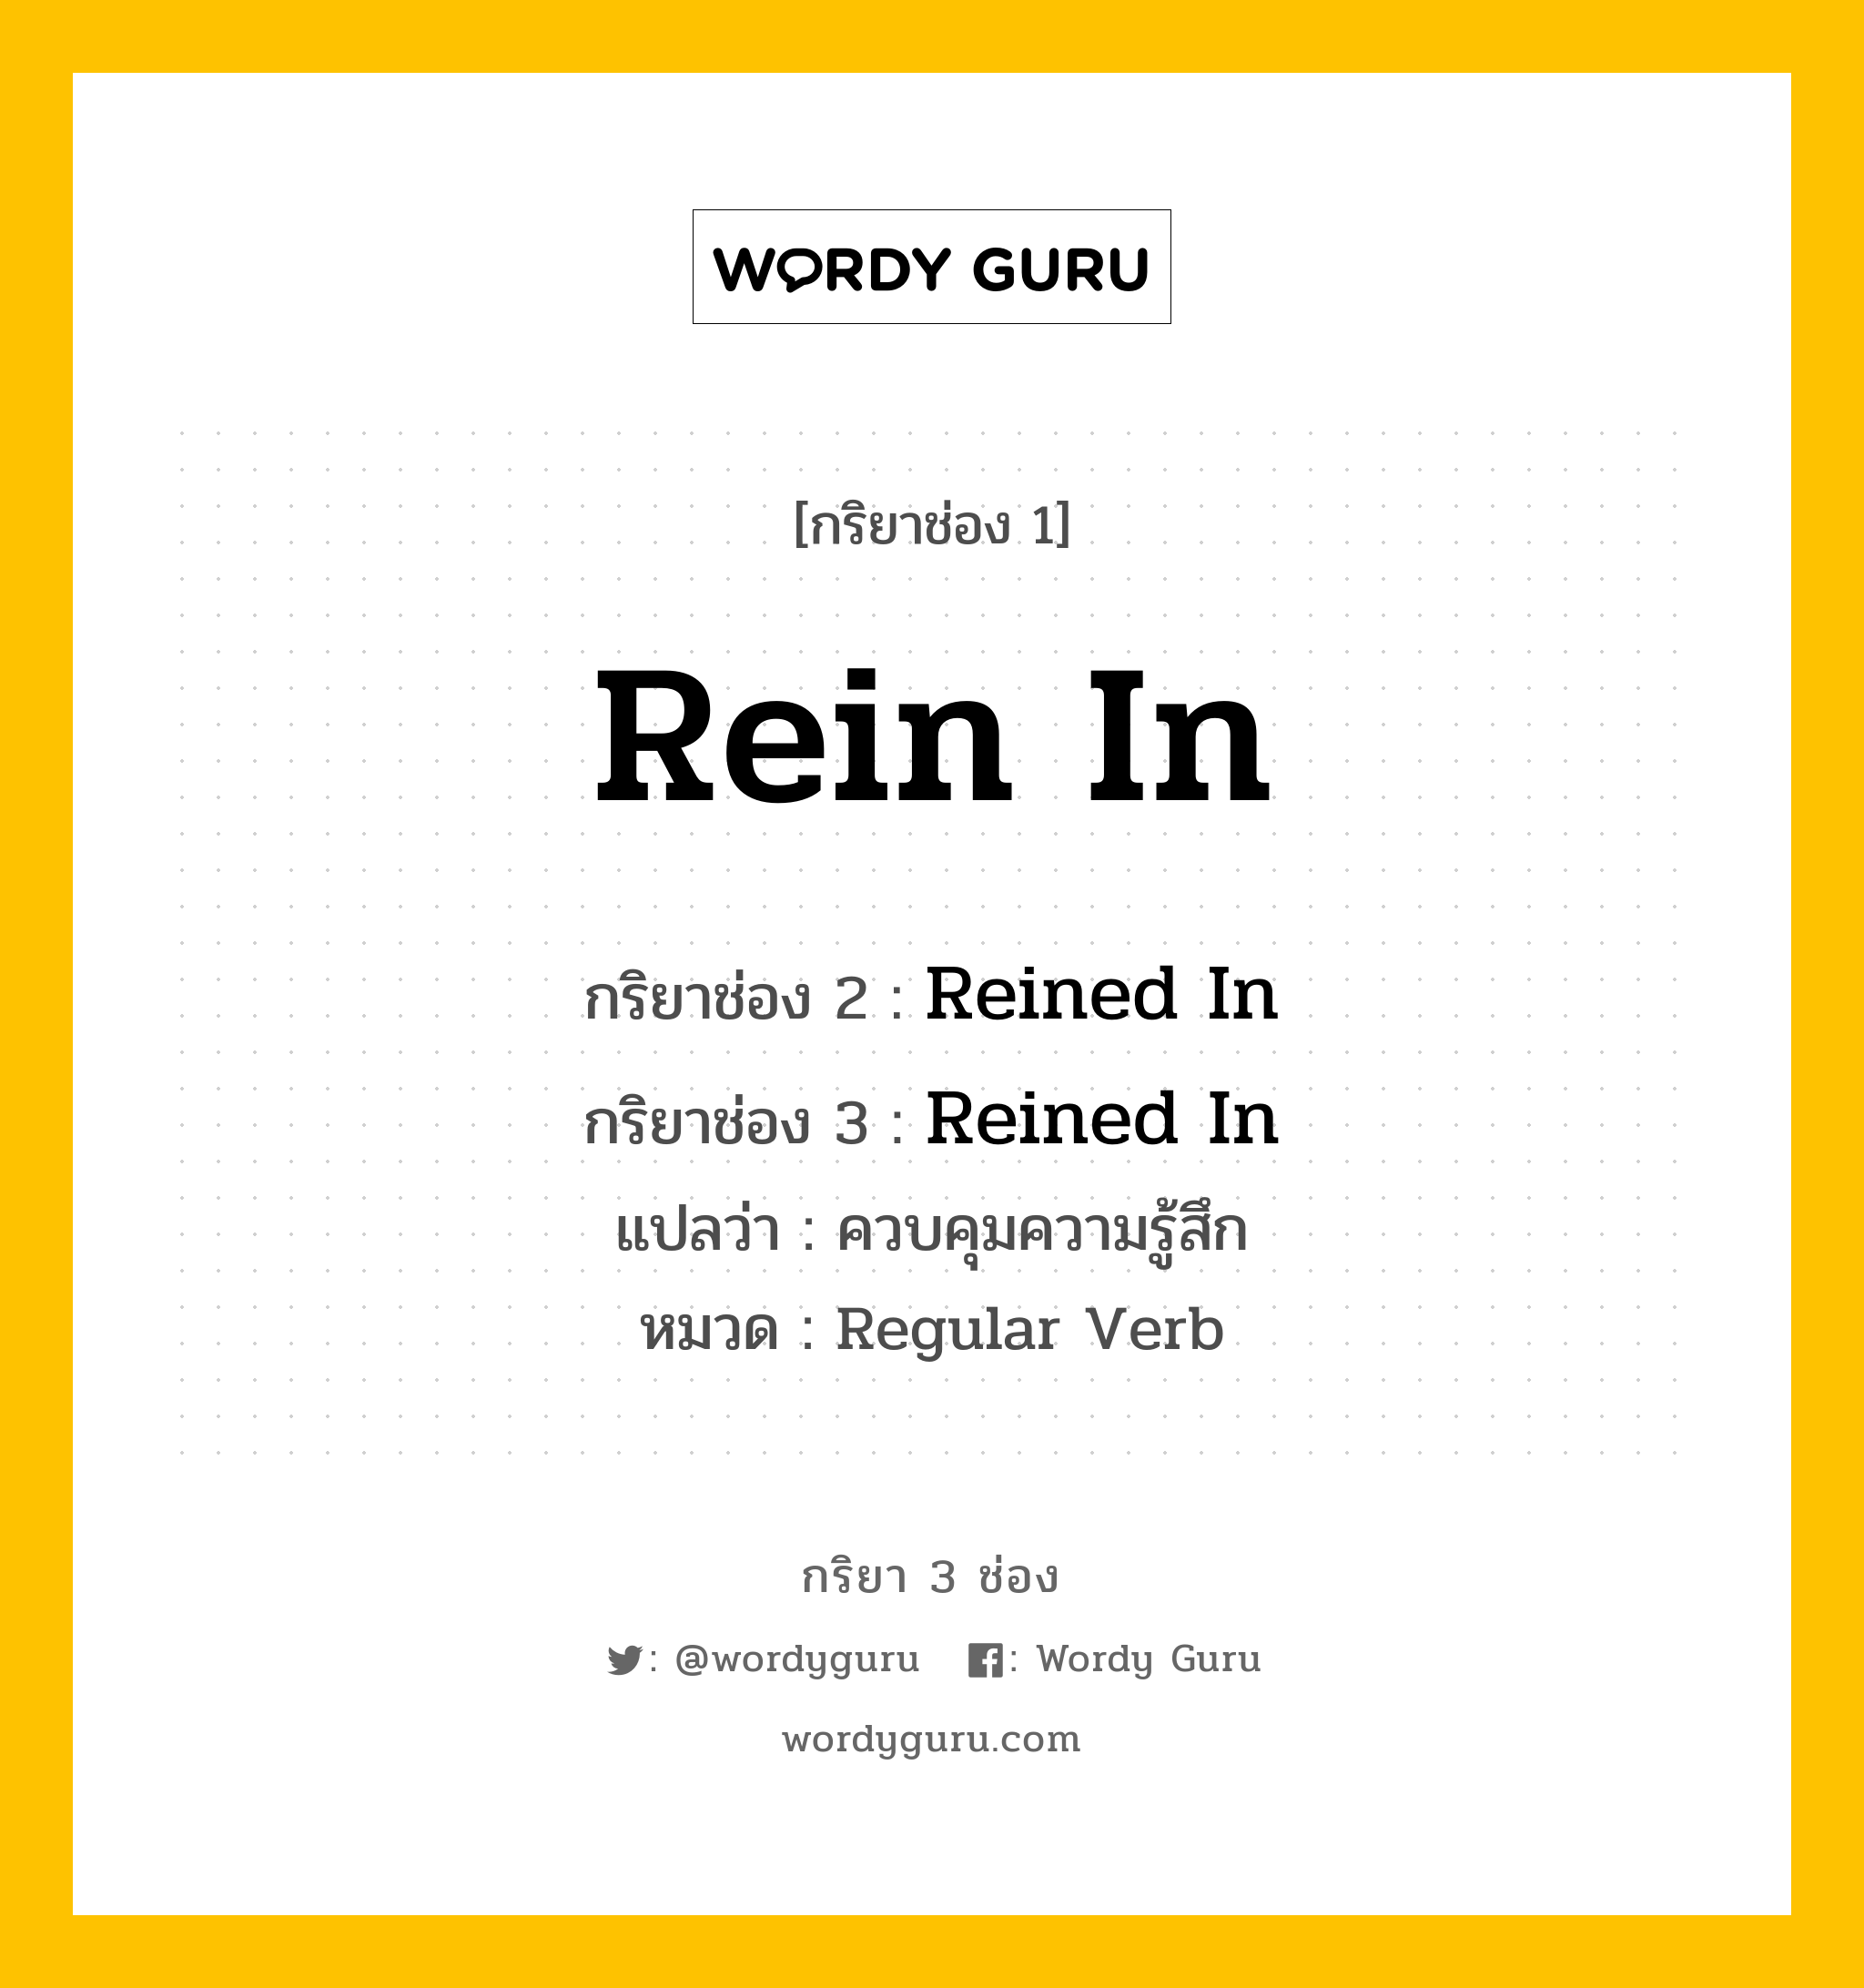 กริยา 3 ช่อง ของ Rein In คืออะไร? มาดูคำอ่าน คำแปลกันเลย, กริยาช่อง 1 Rein In กริยาช่อง 2 Reined In กริยาช่อง 3 Reined In แปลว่า ควบคุมความรู้สึก หมวด Regular Verb หมวด Regular Verb